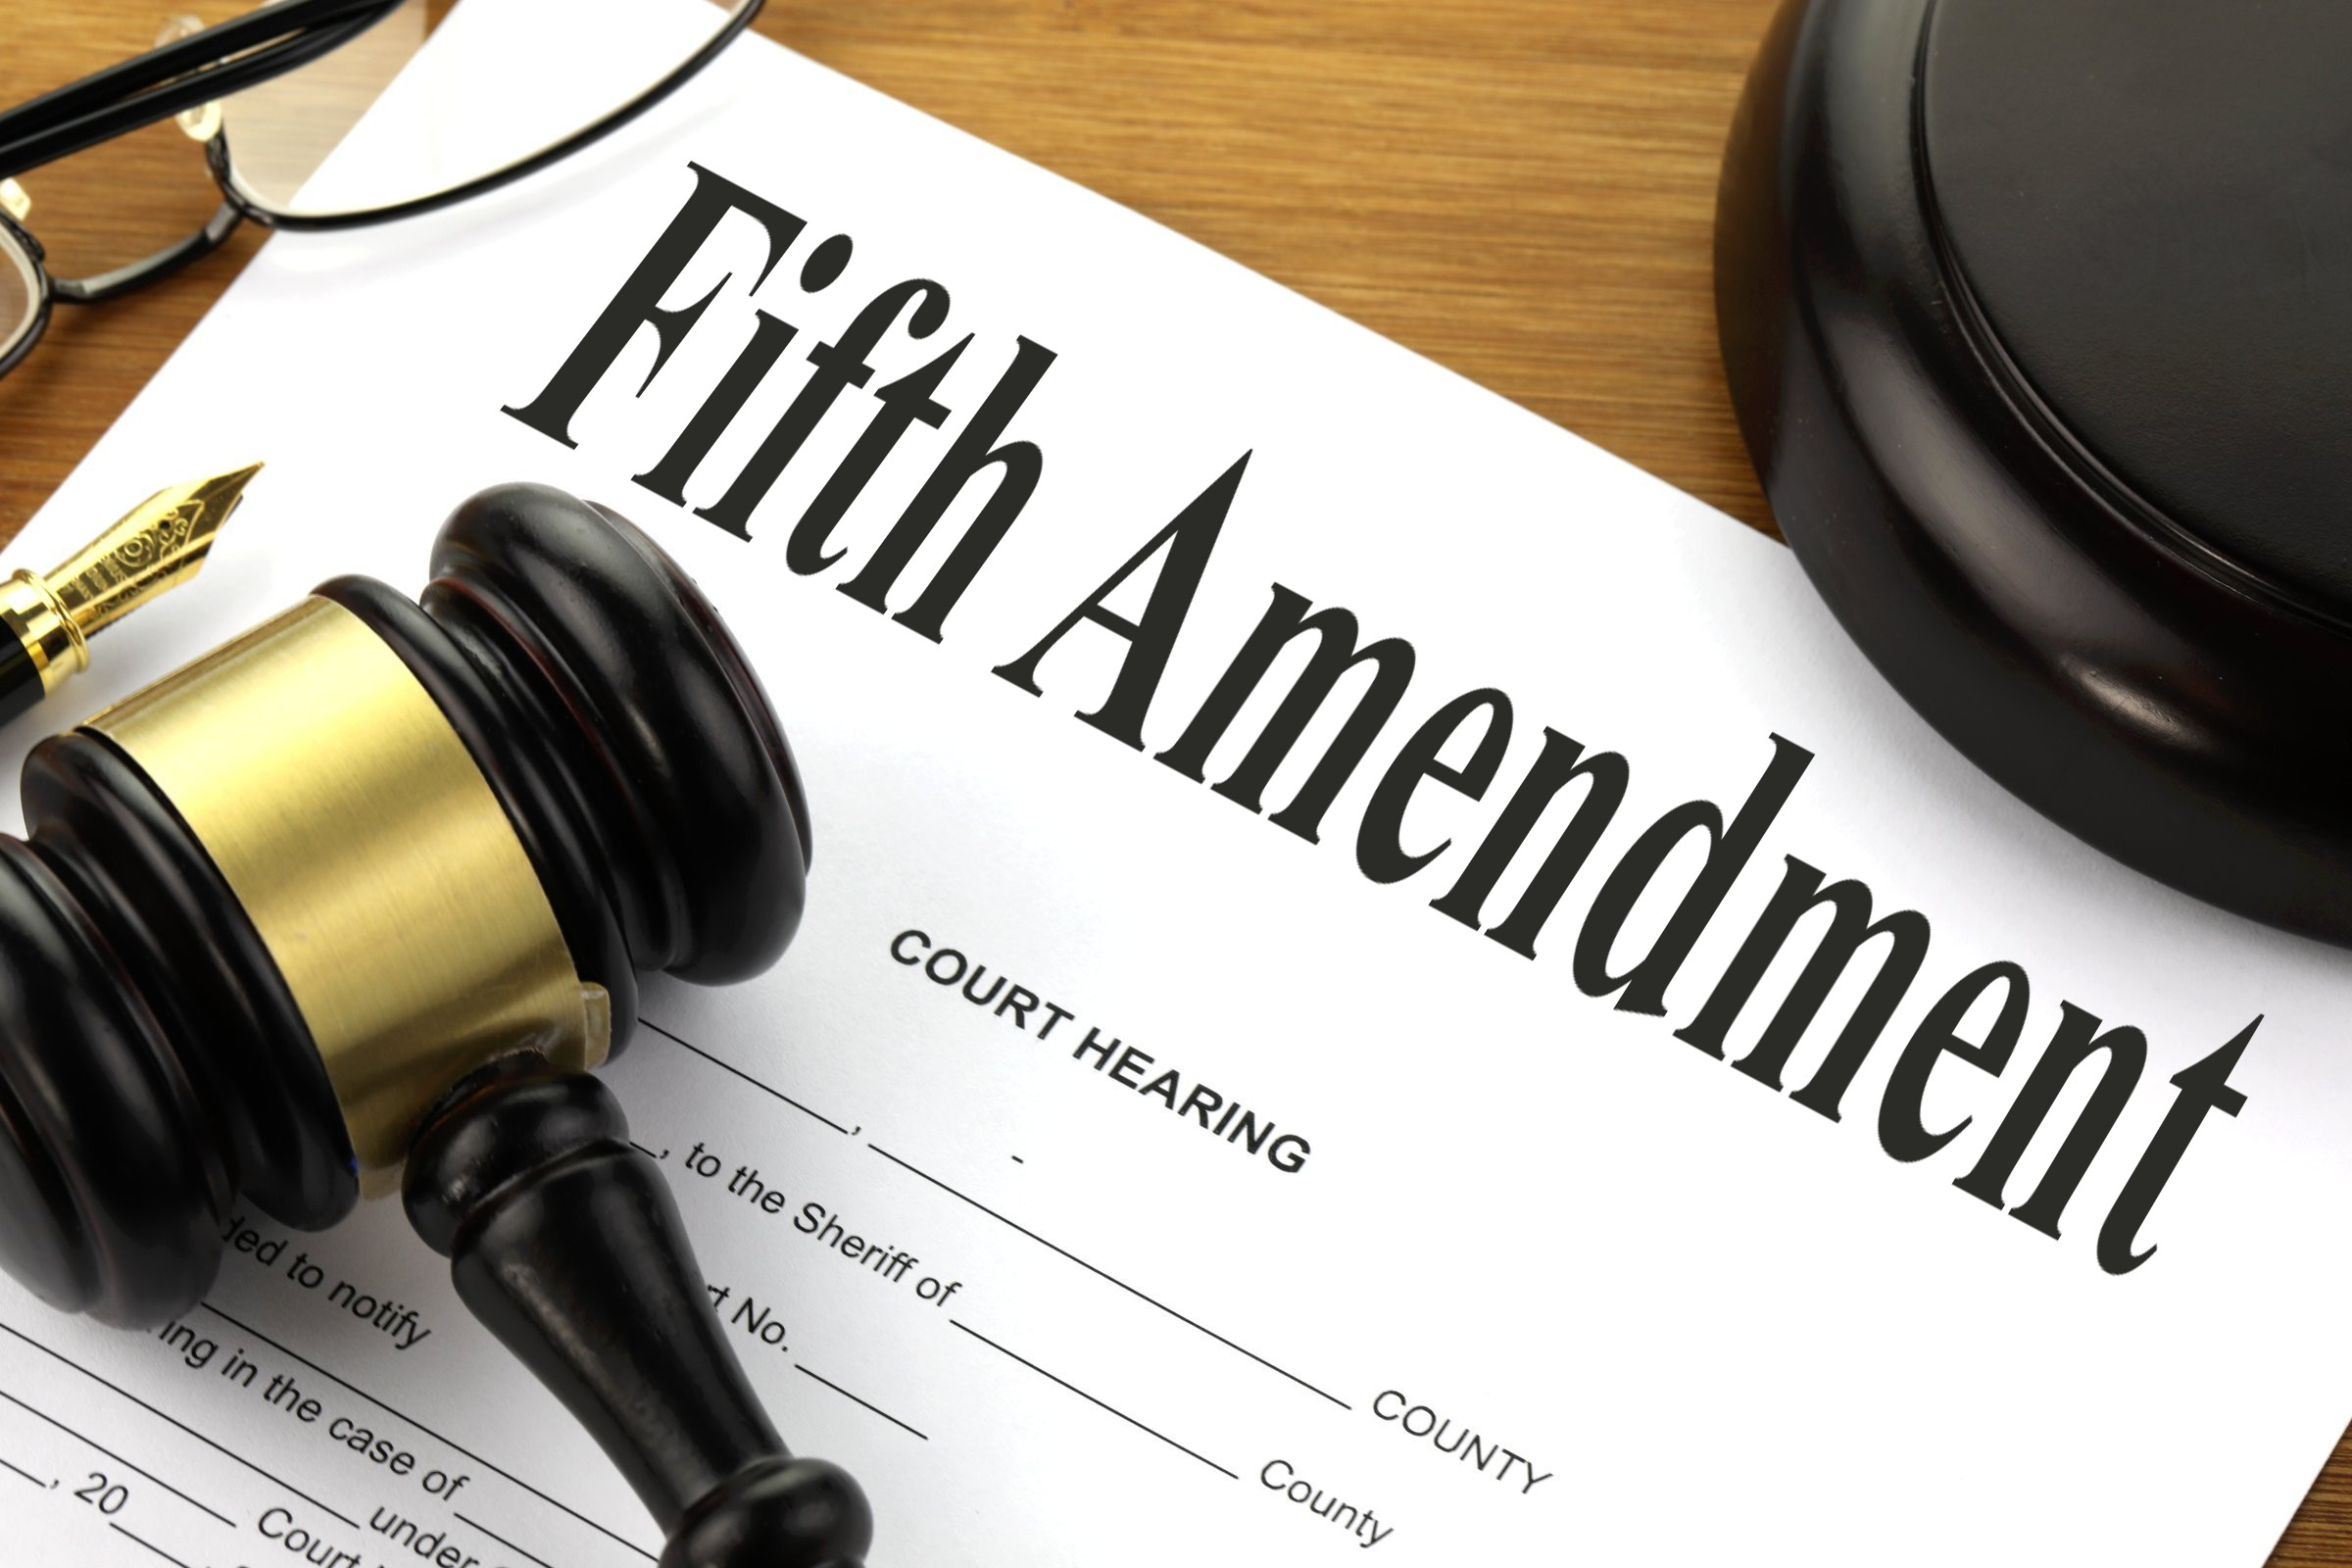 fifth amendment